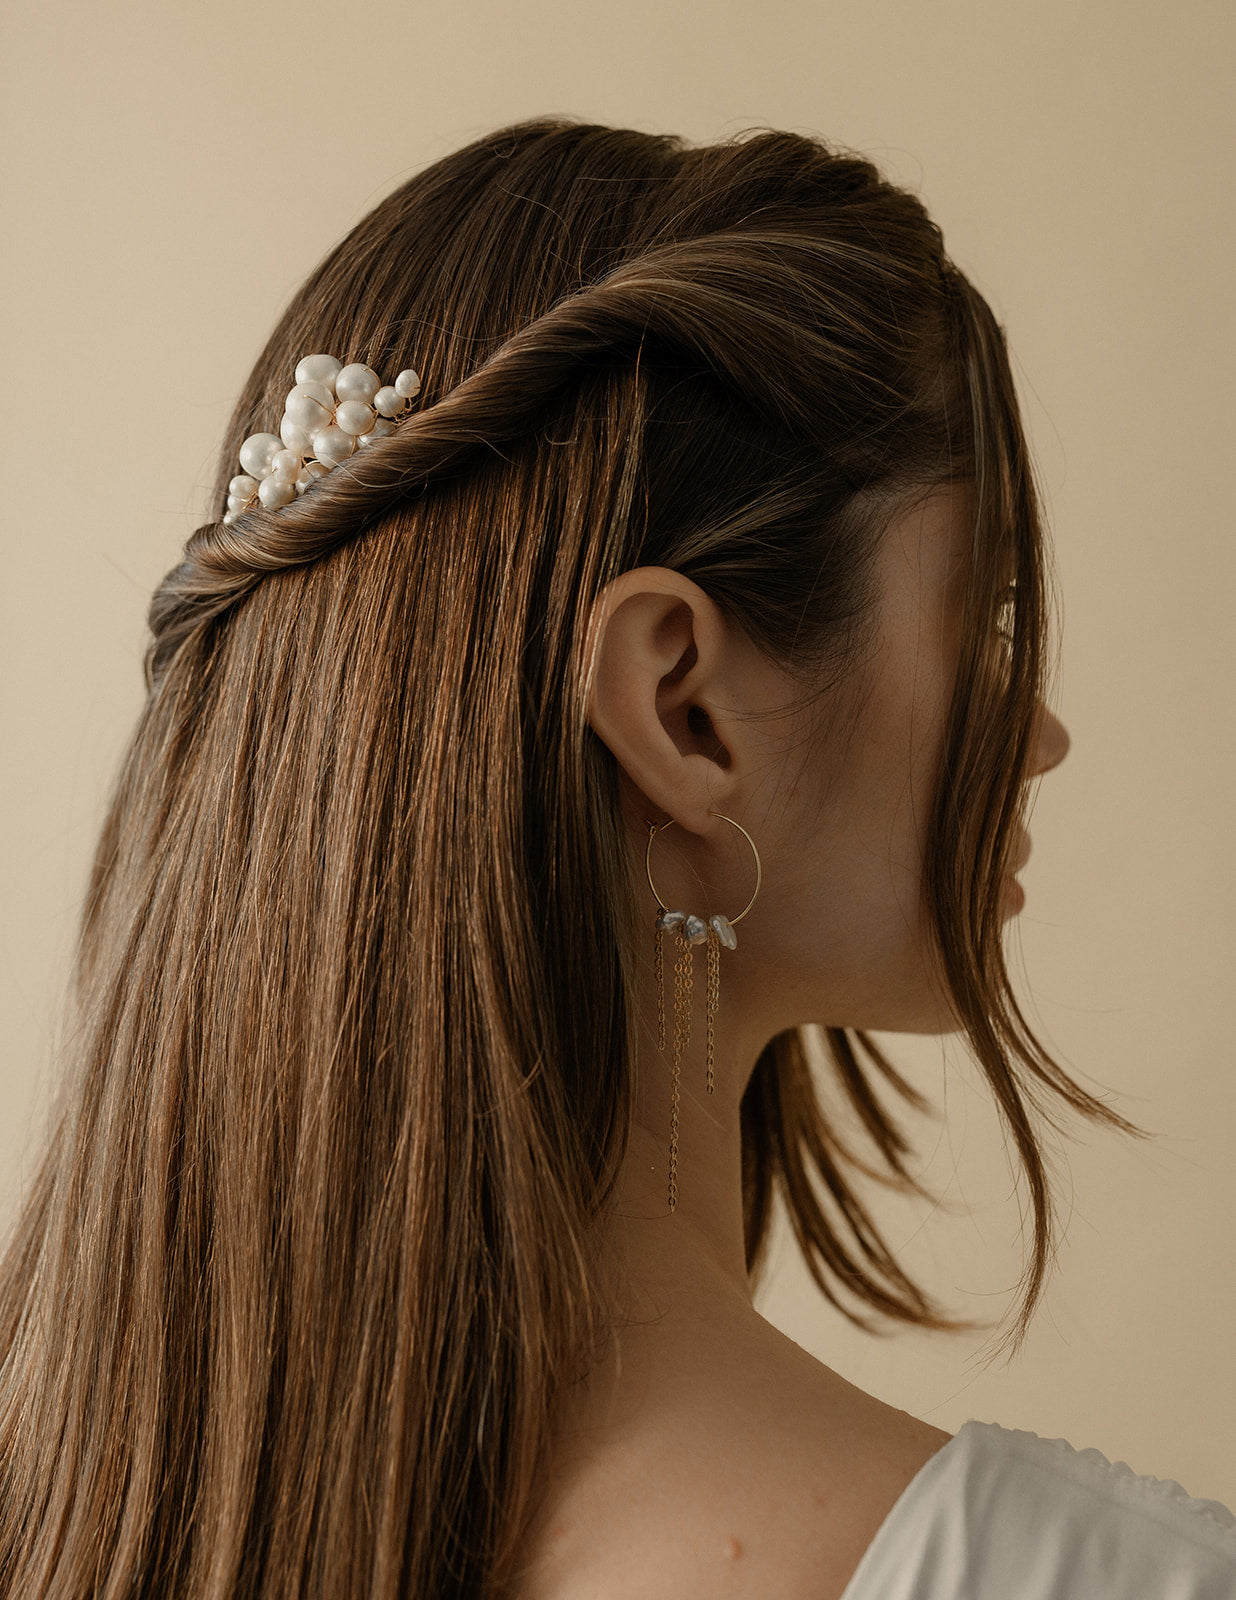 Femme sur le côté avec les cheveux long lachés montrant en avant ses boucles d'oreilles ronde et pendantes avec des perles irrégulières